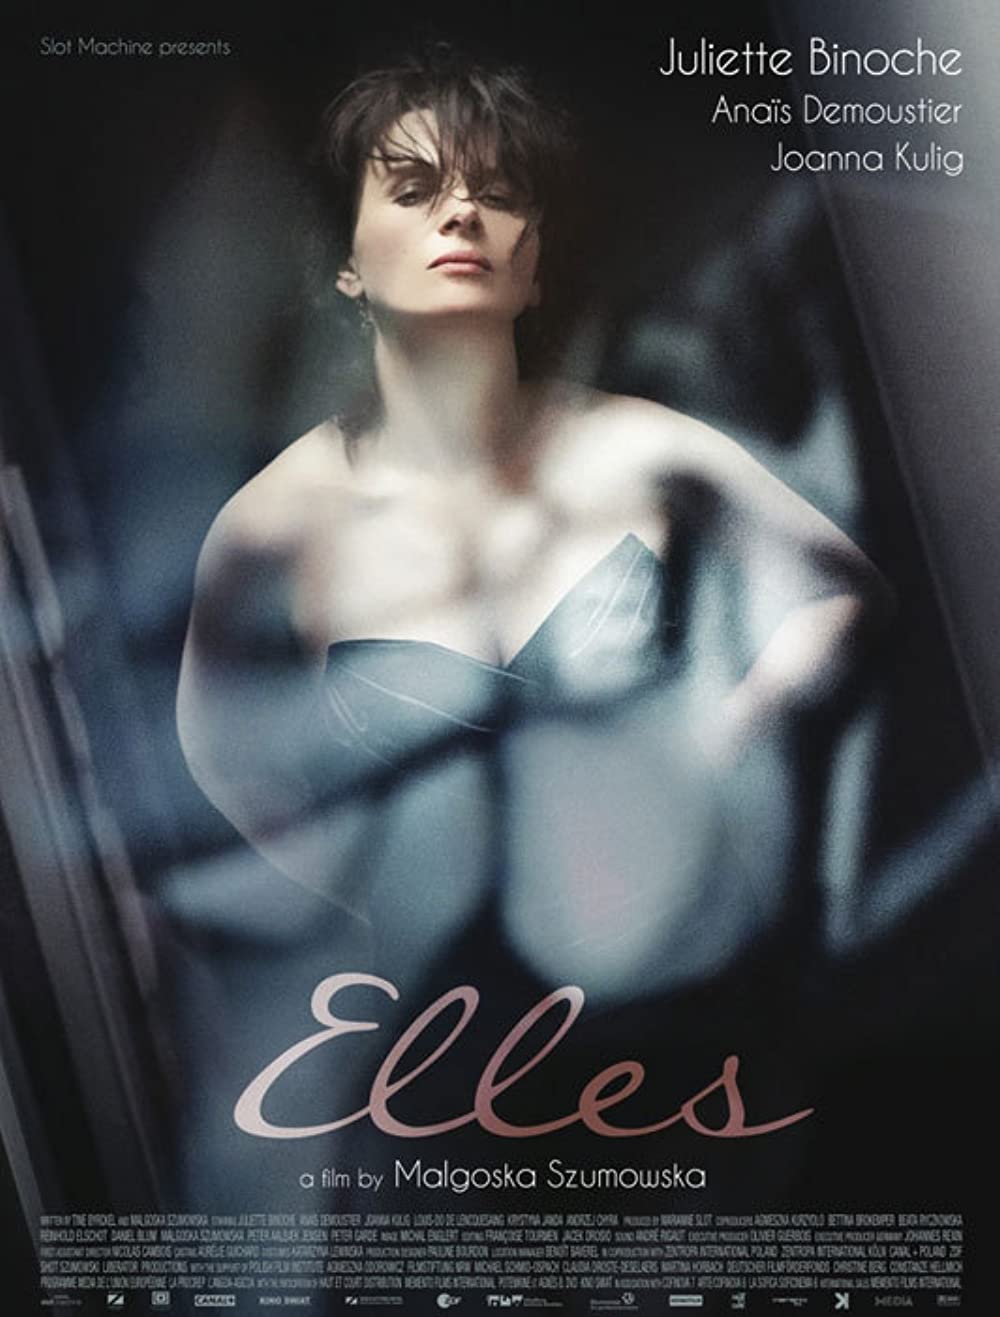 ดูหนังออนไลน์ฟรี Elles (2011) ฉึก…หัวใจฉาว